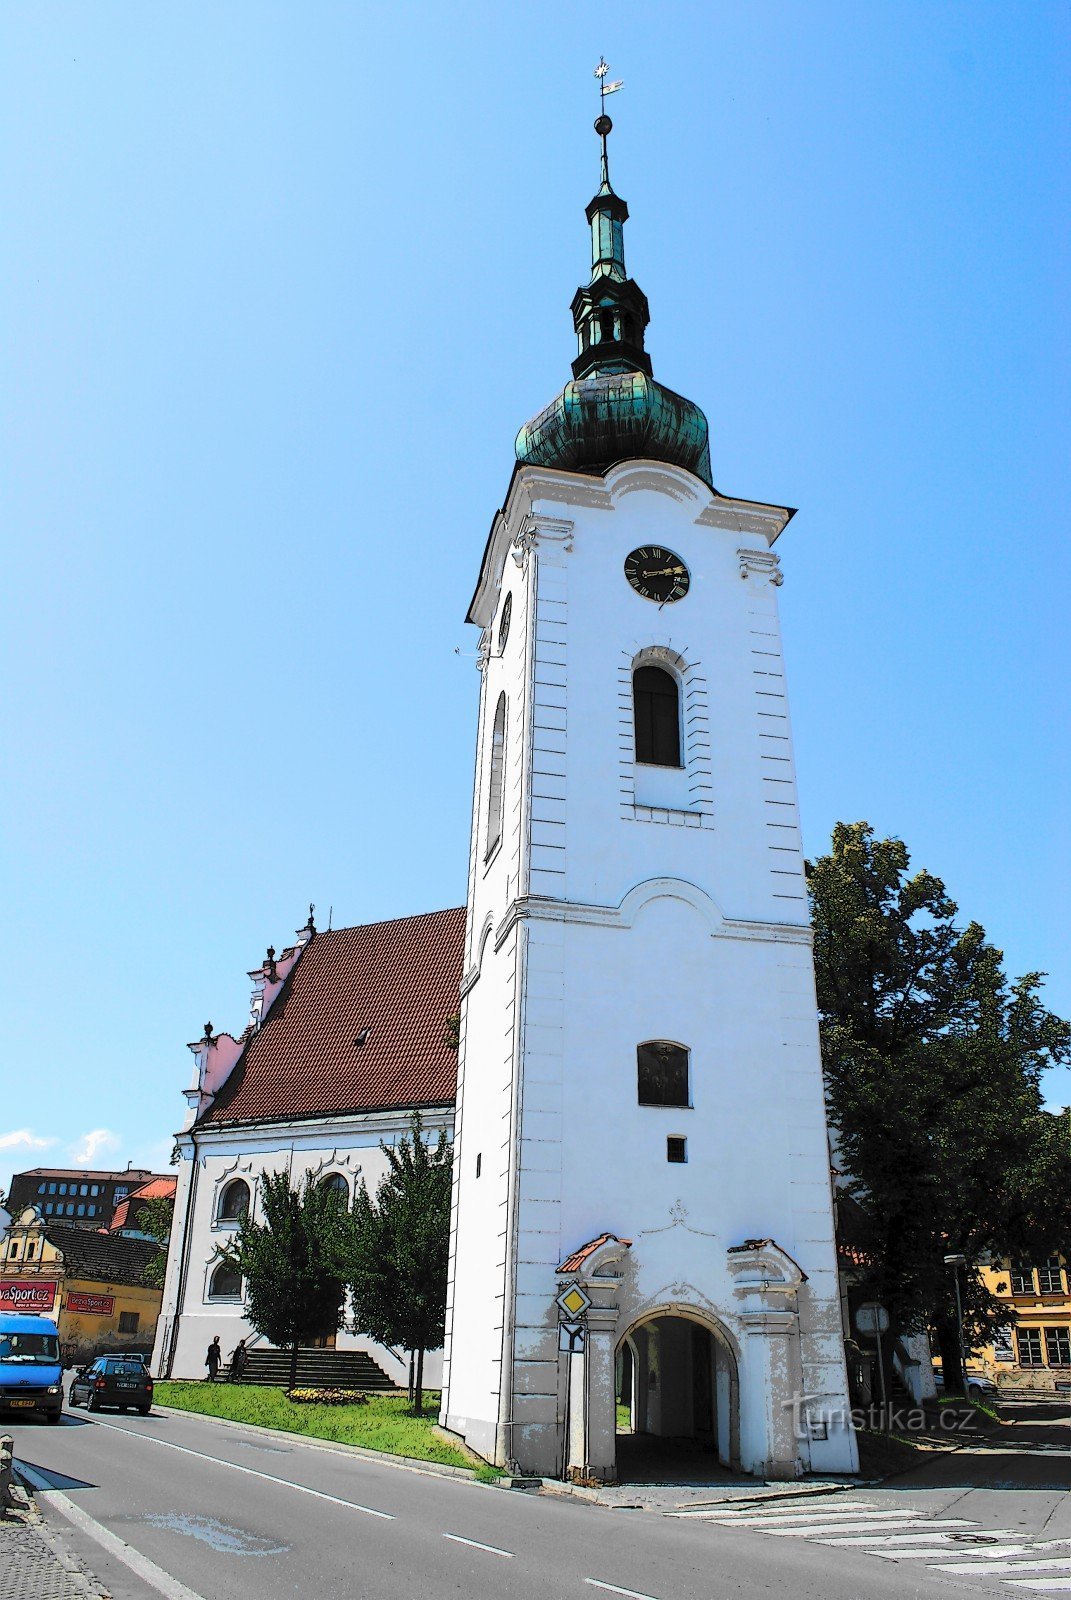 Pelhřimov - igreja de St. Bem-vindo com campainha tocando